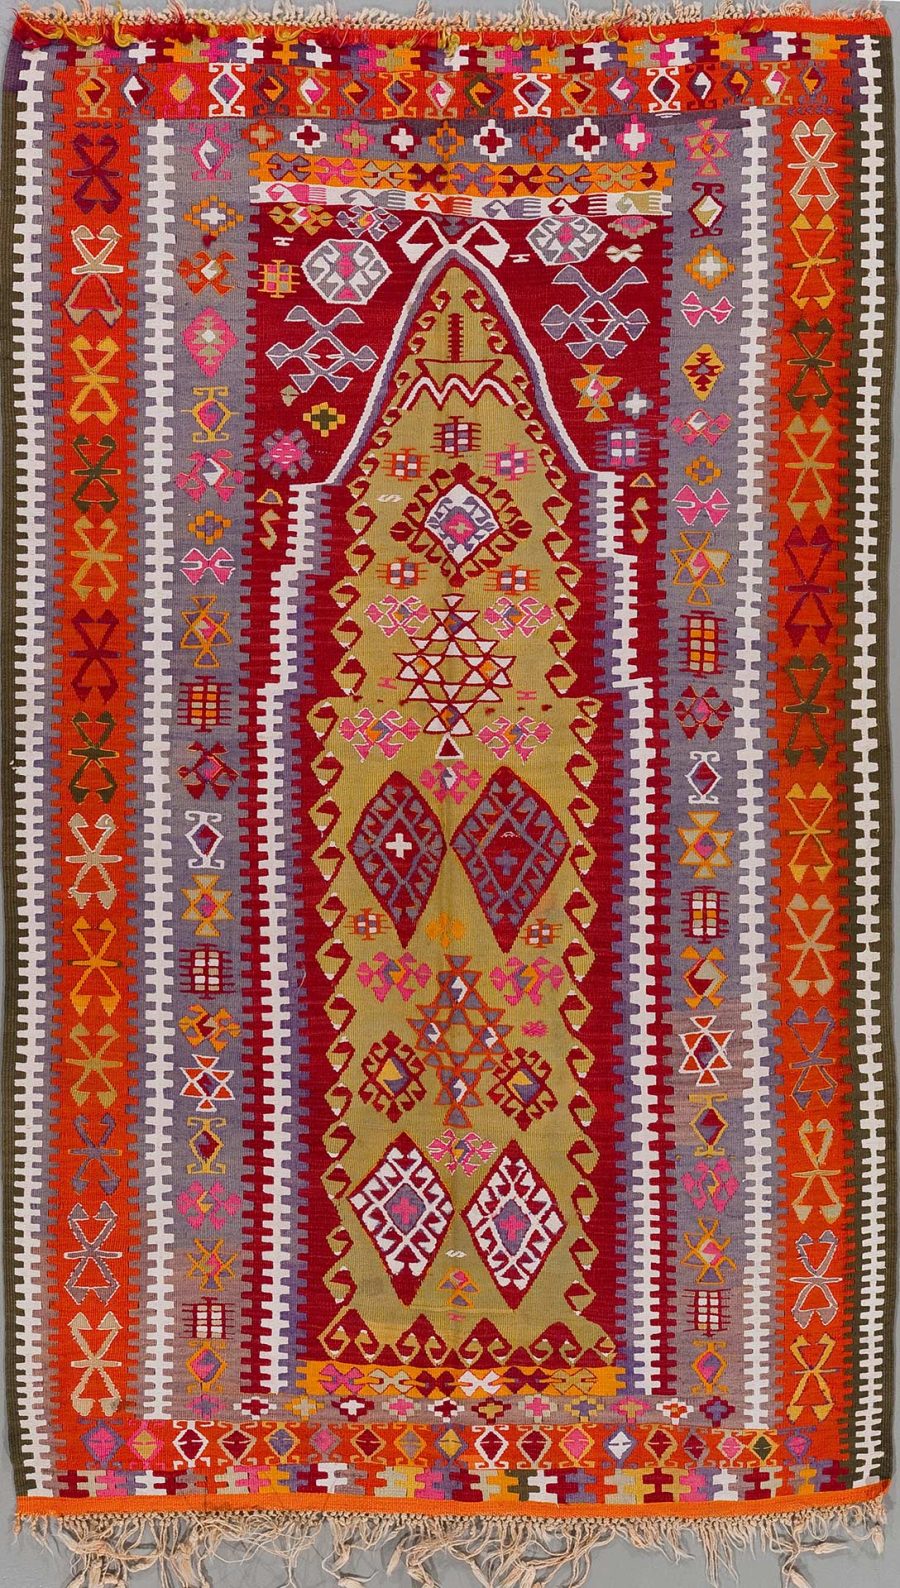 Traditioneller handgewebter Teppich mit reichhaltigen Mustern und einer zentralen Raute in Rot-, Gelb- und Orangetönen, flankiert von Vielfalt geometrischer und symbolhafter Designs in vielschichtigen Farben.